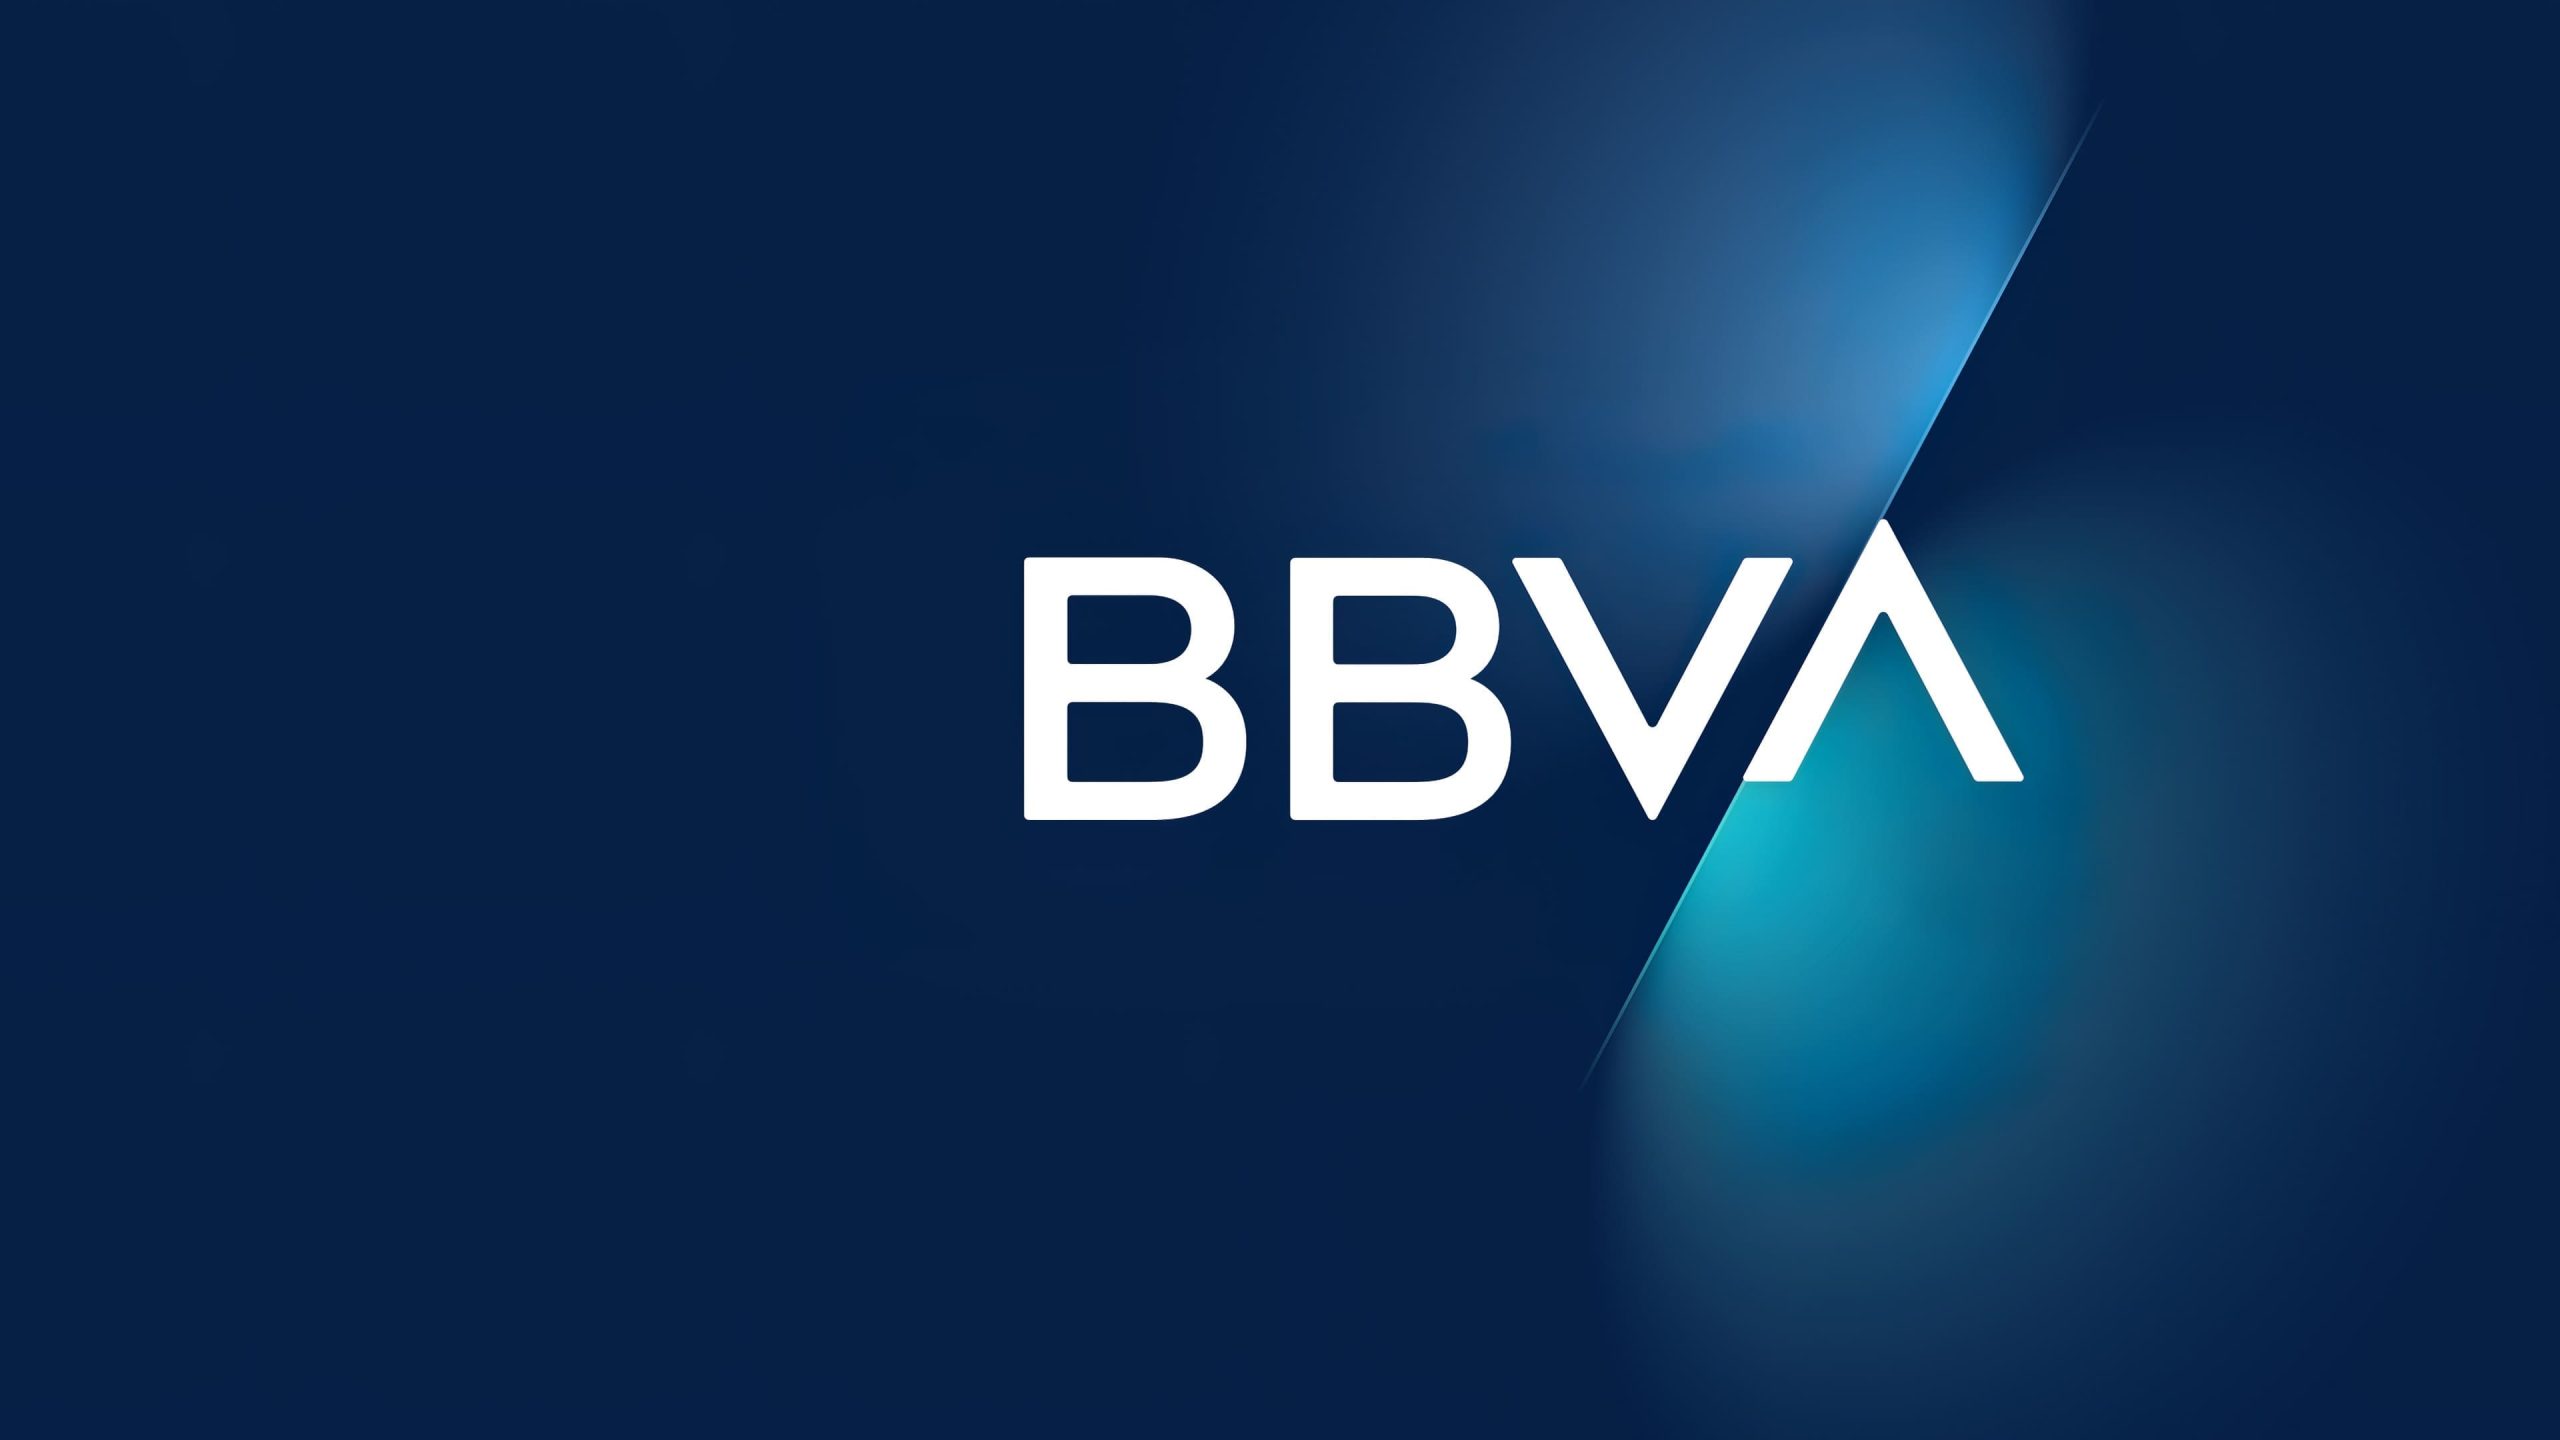 BBVA Швейцария е първата традиционна банка в Европа предлагаща Етериум